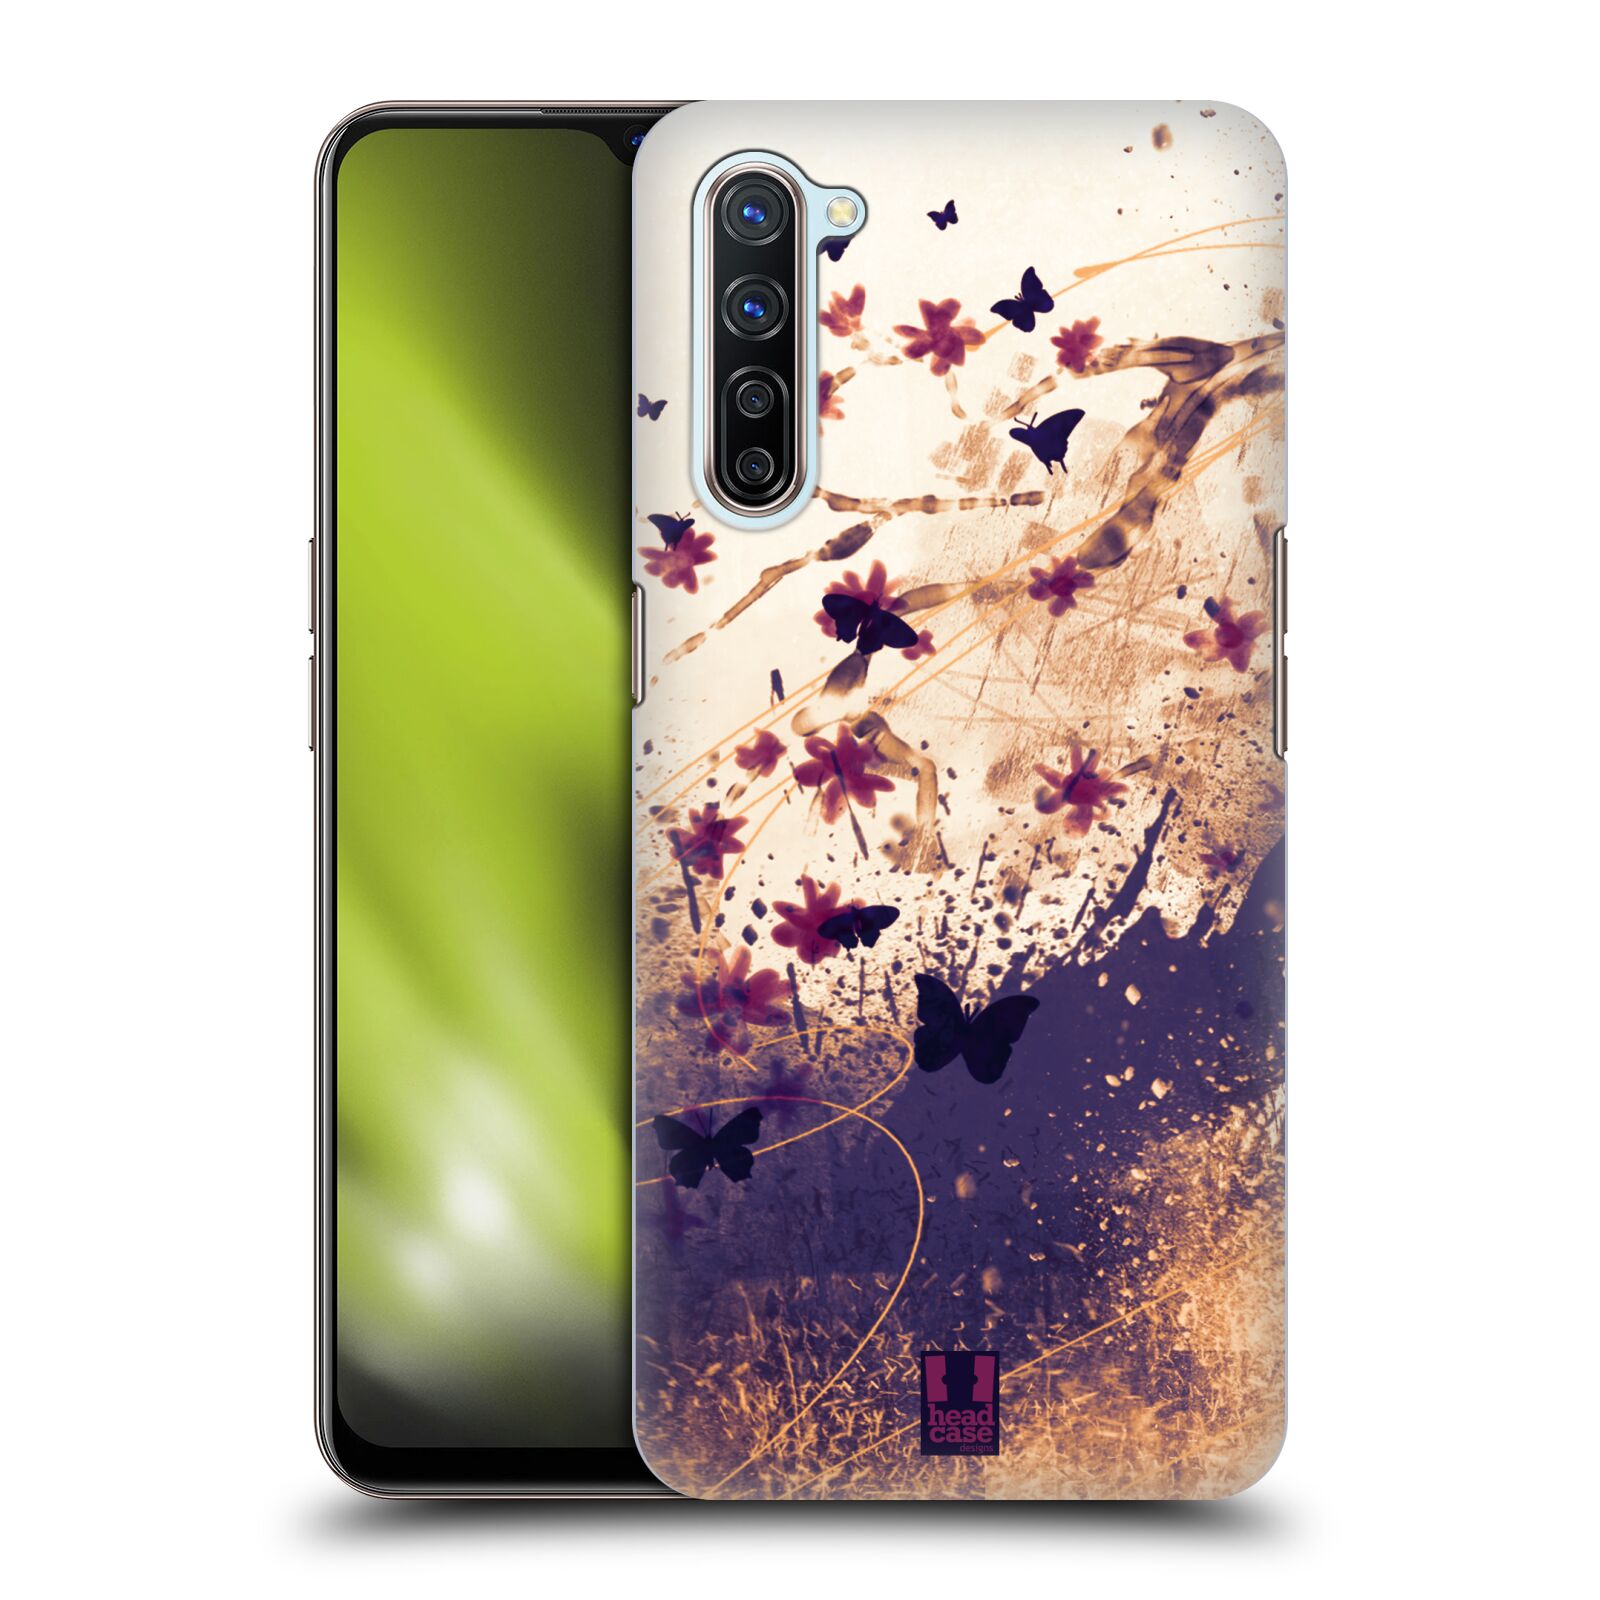 Zadní obal pro mobil Oppo Find X2 LITE - HEAD CASE - Barevné květy a motýlci